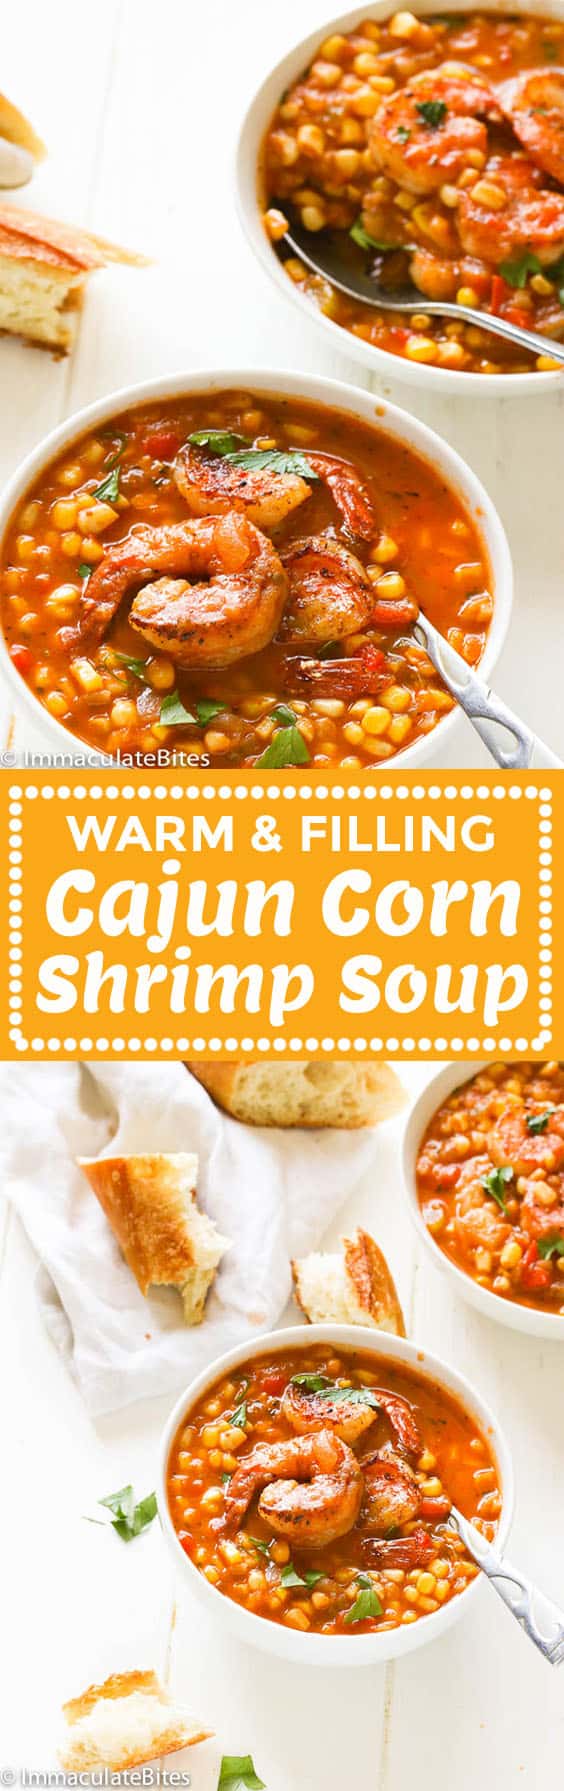 cajun corn shrimp soup